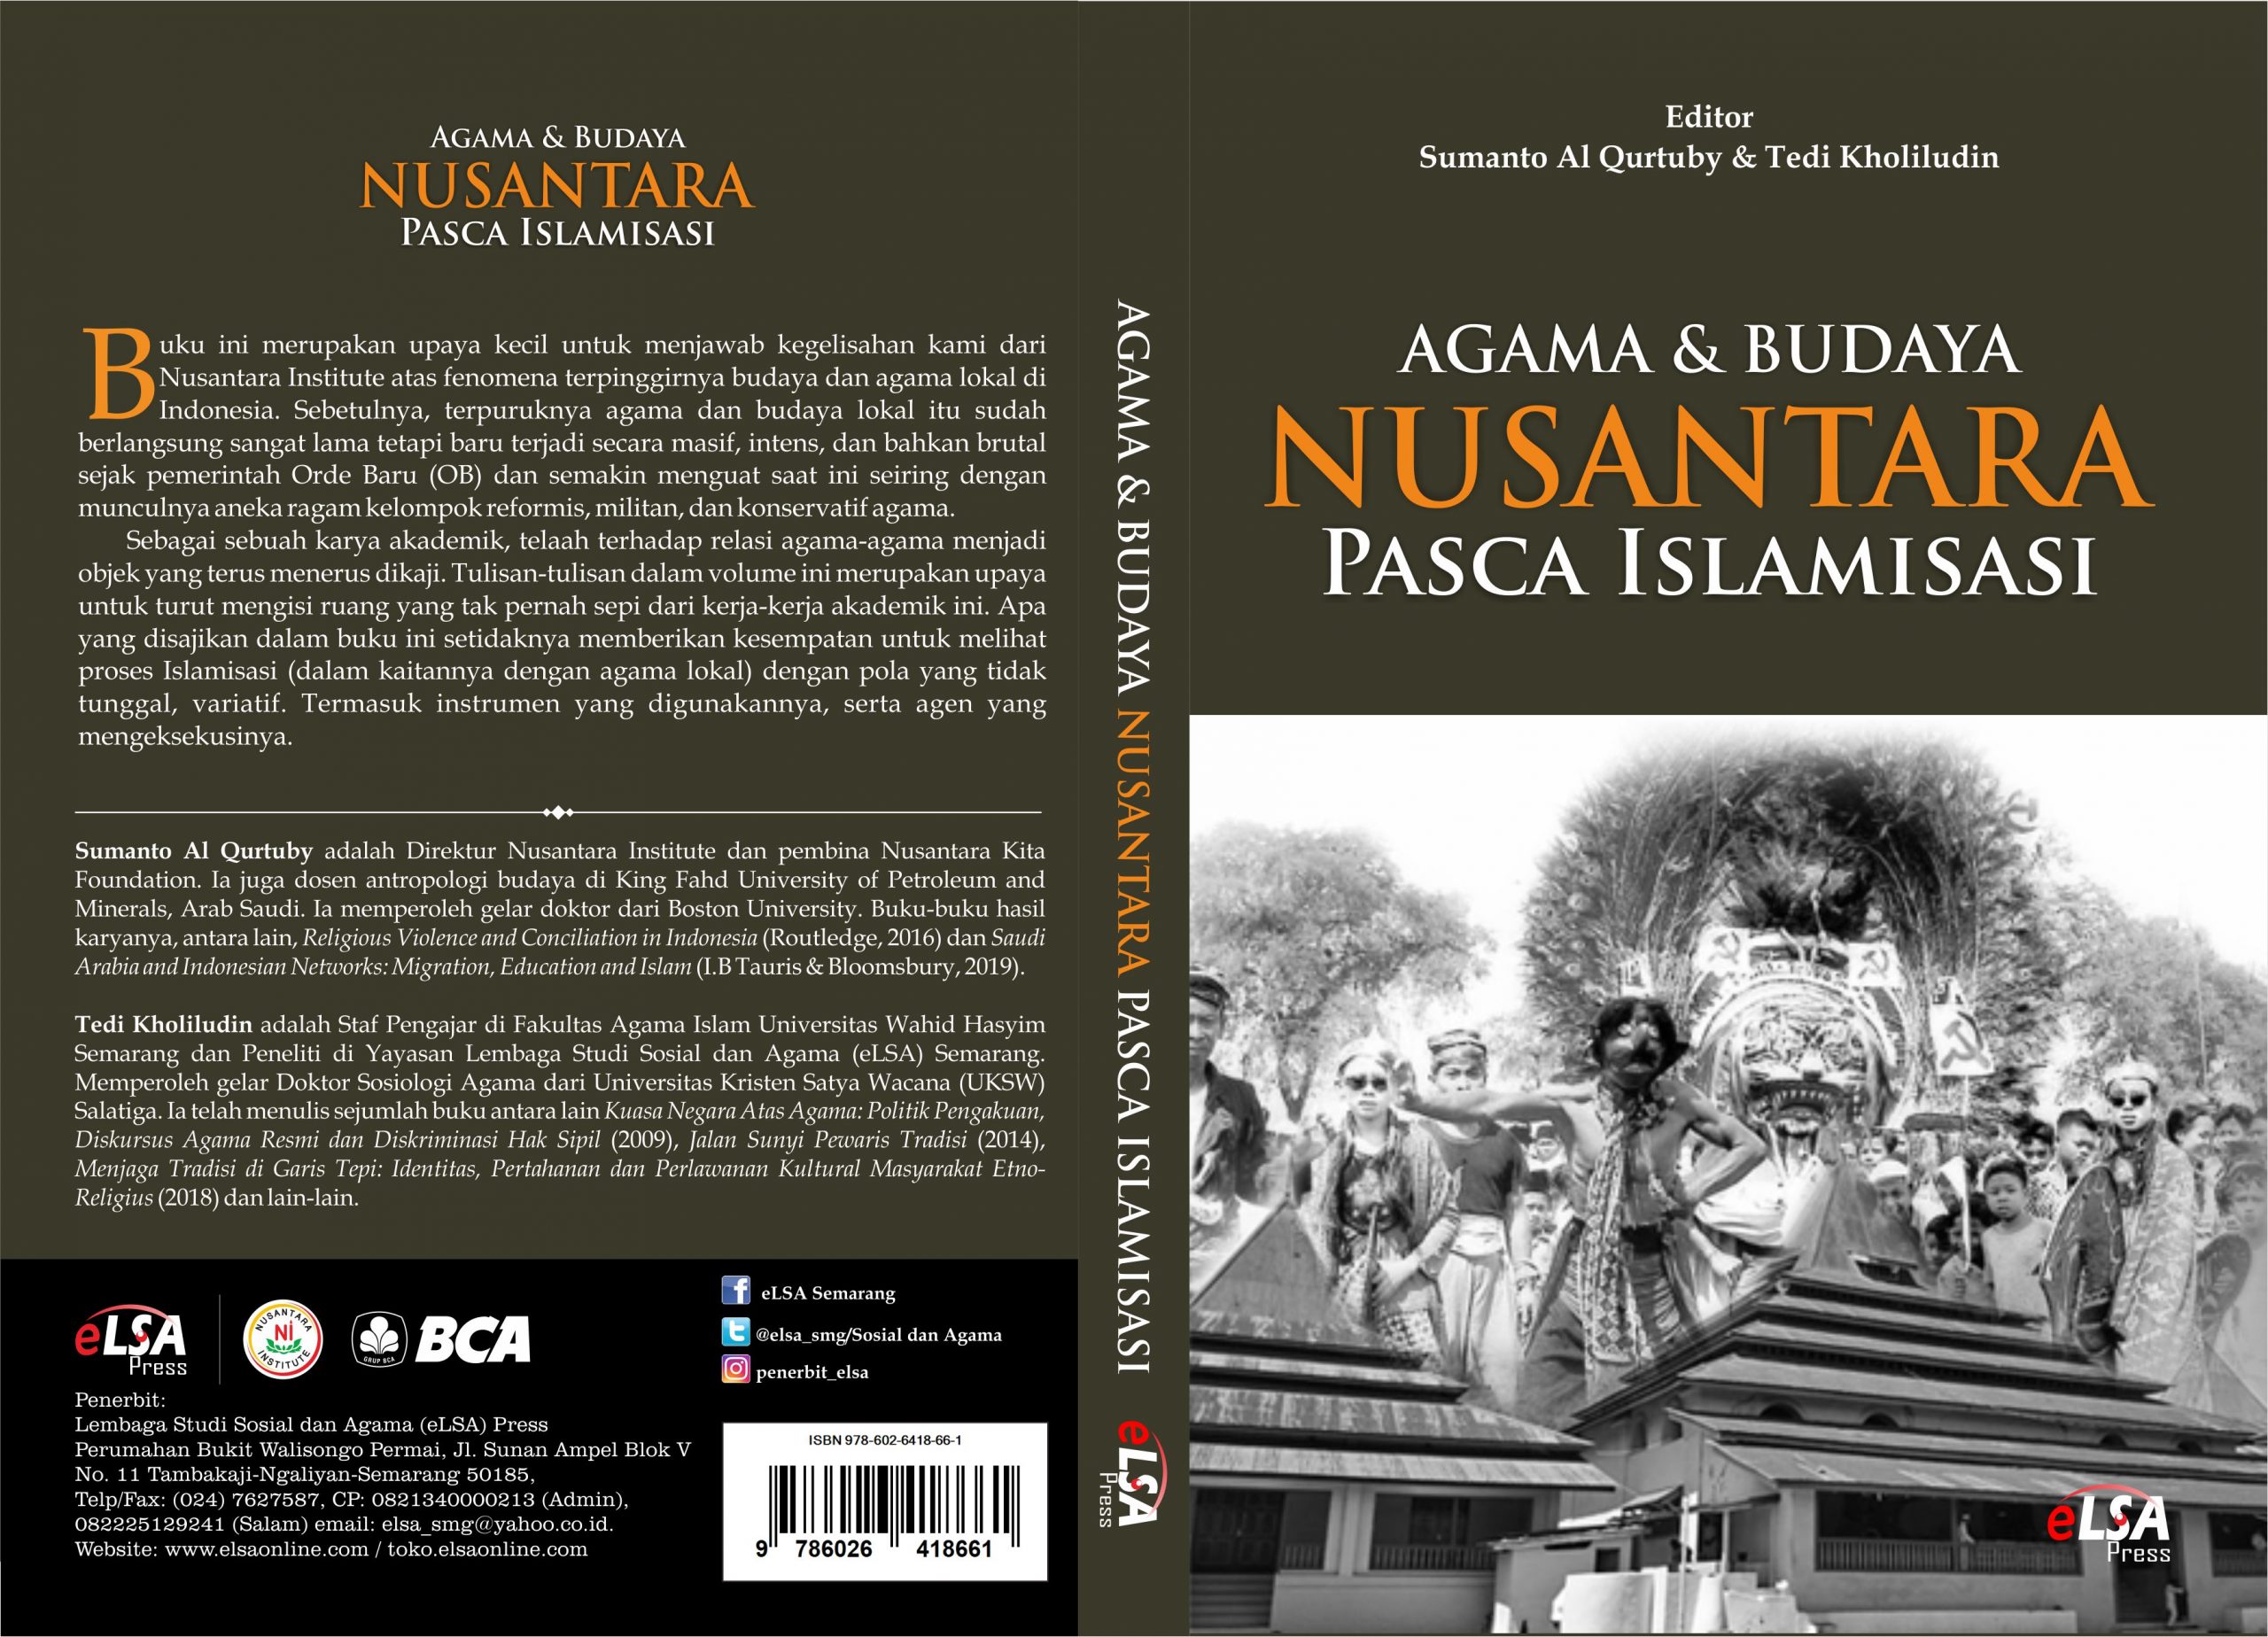 Agama dan Budaya Nusantara Pasca Islamisasi